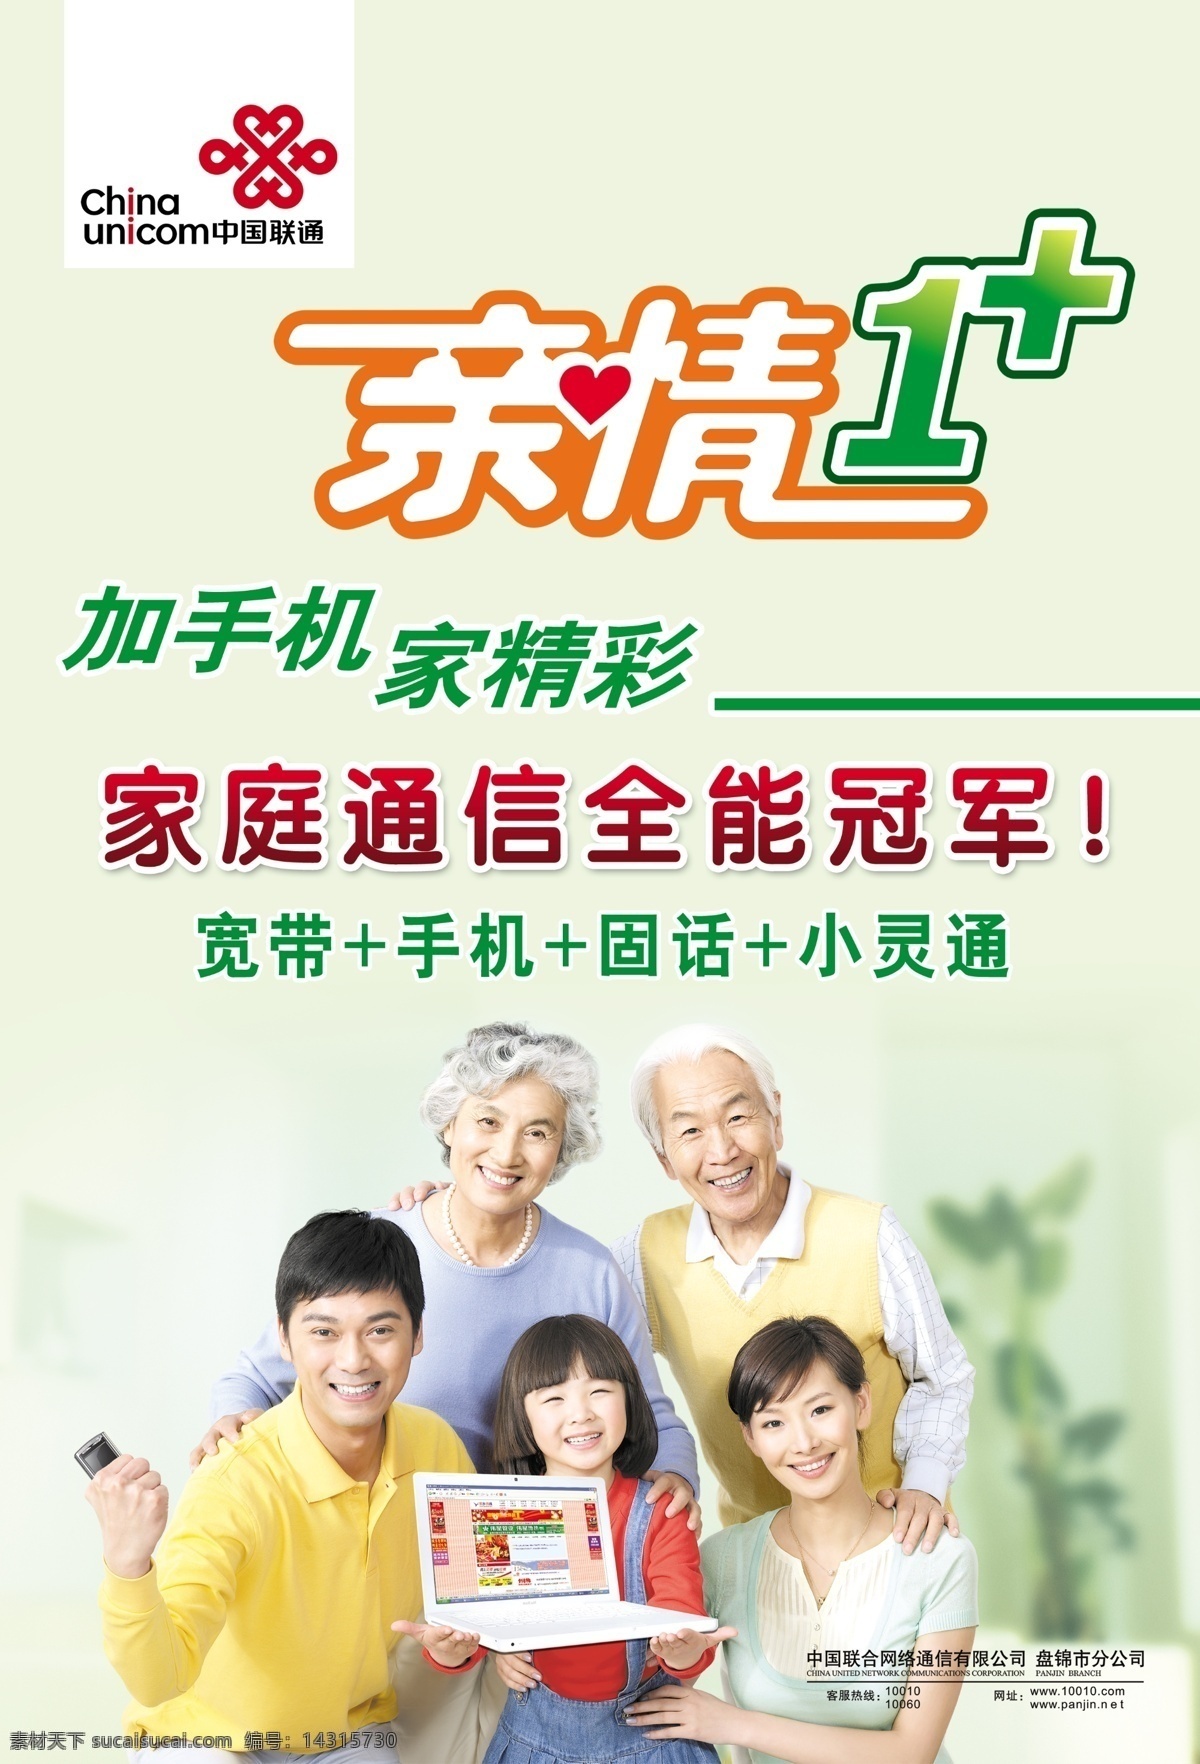 中国联通 亲情 一家 标识 一家人 老人 小孩 笔记本 电脑 手机 亲情一 广告设计模板 源文件库